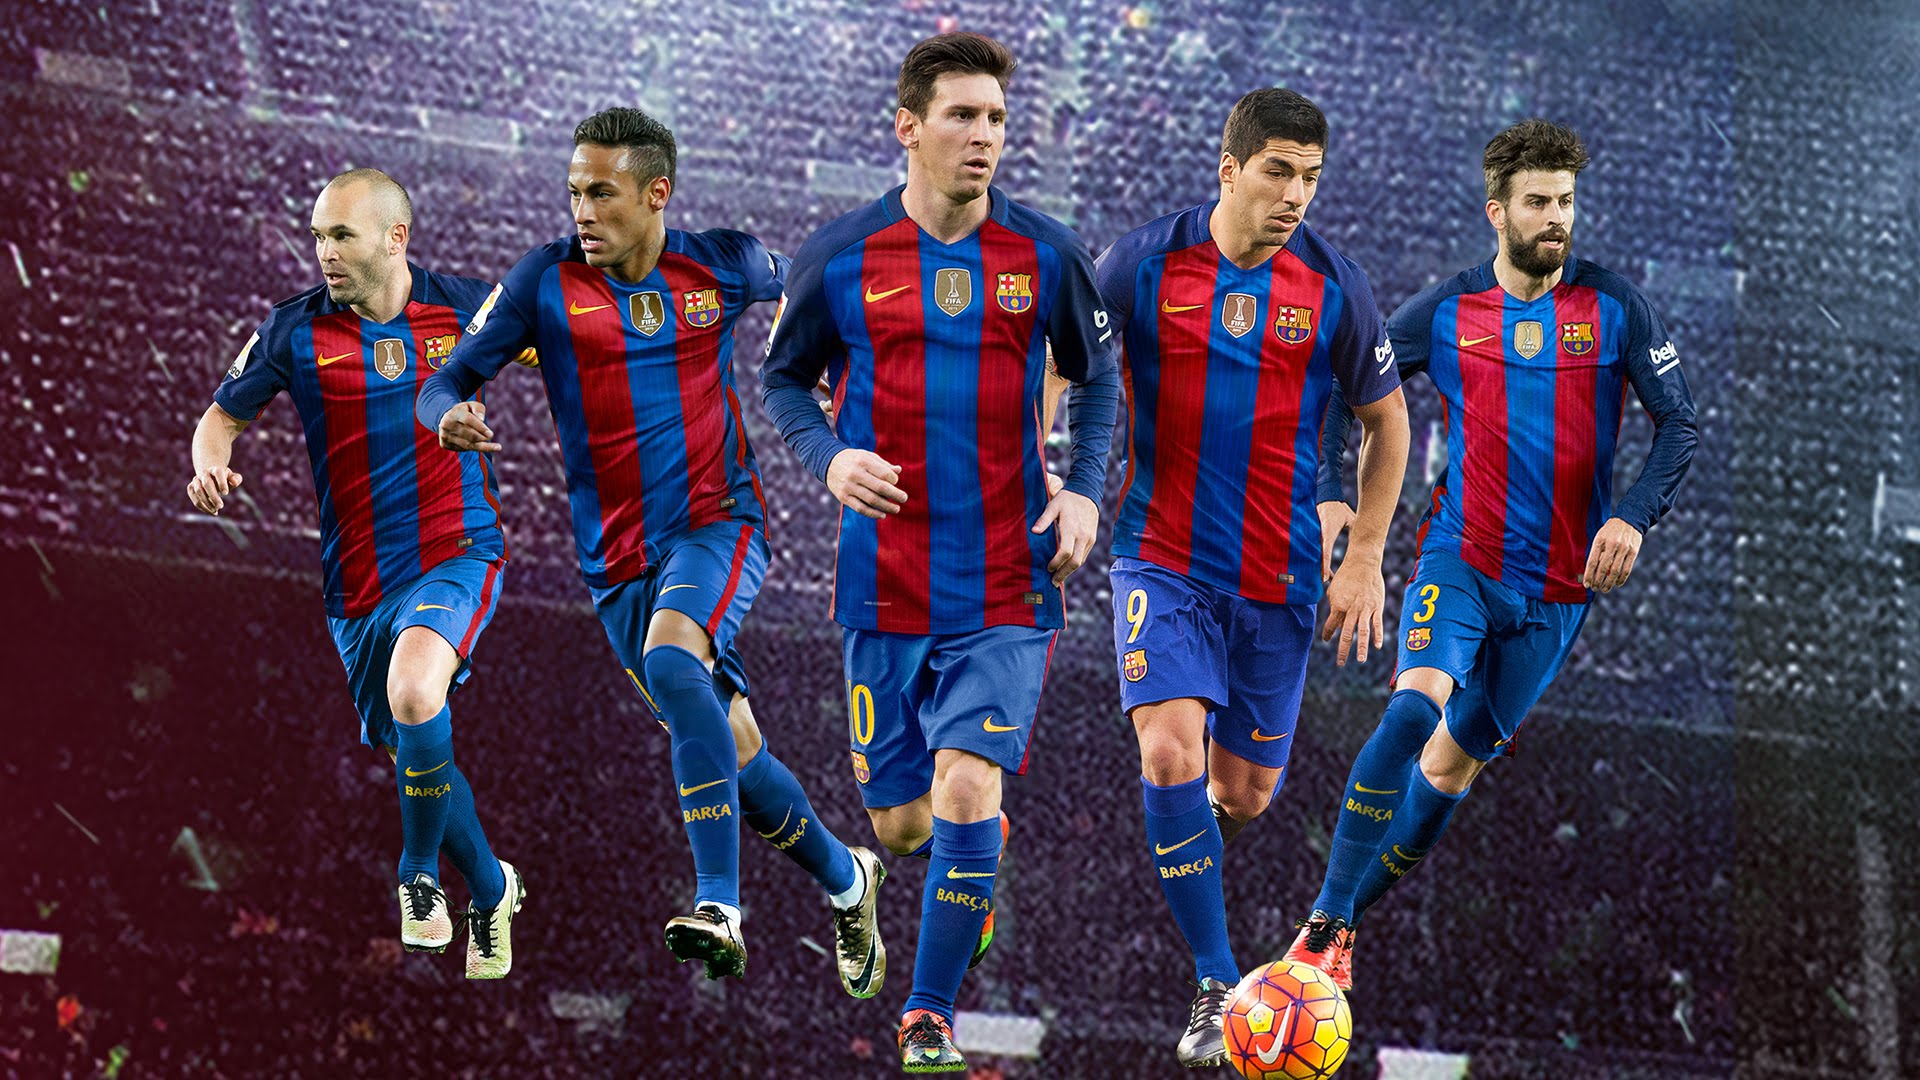 fond d'écran de l'équipe de barcelone,joueur de football,joueur de football,équipe,joueur,football